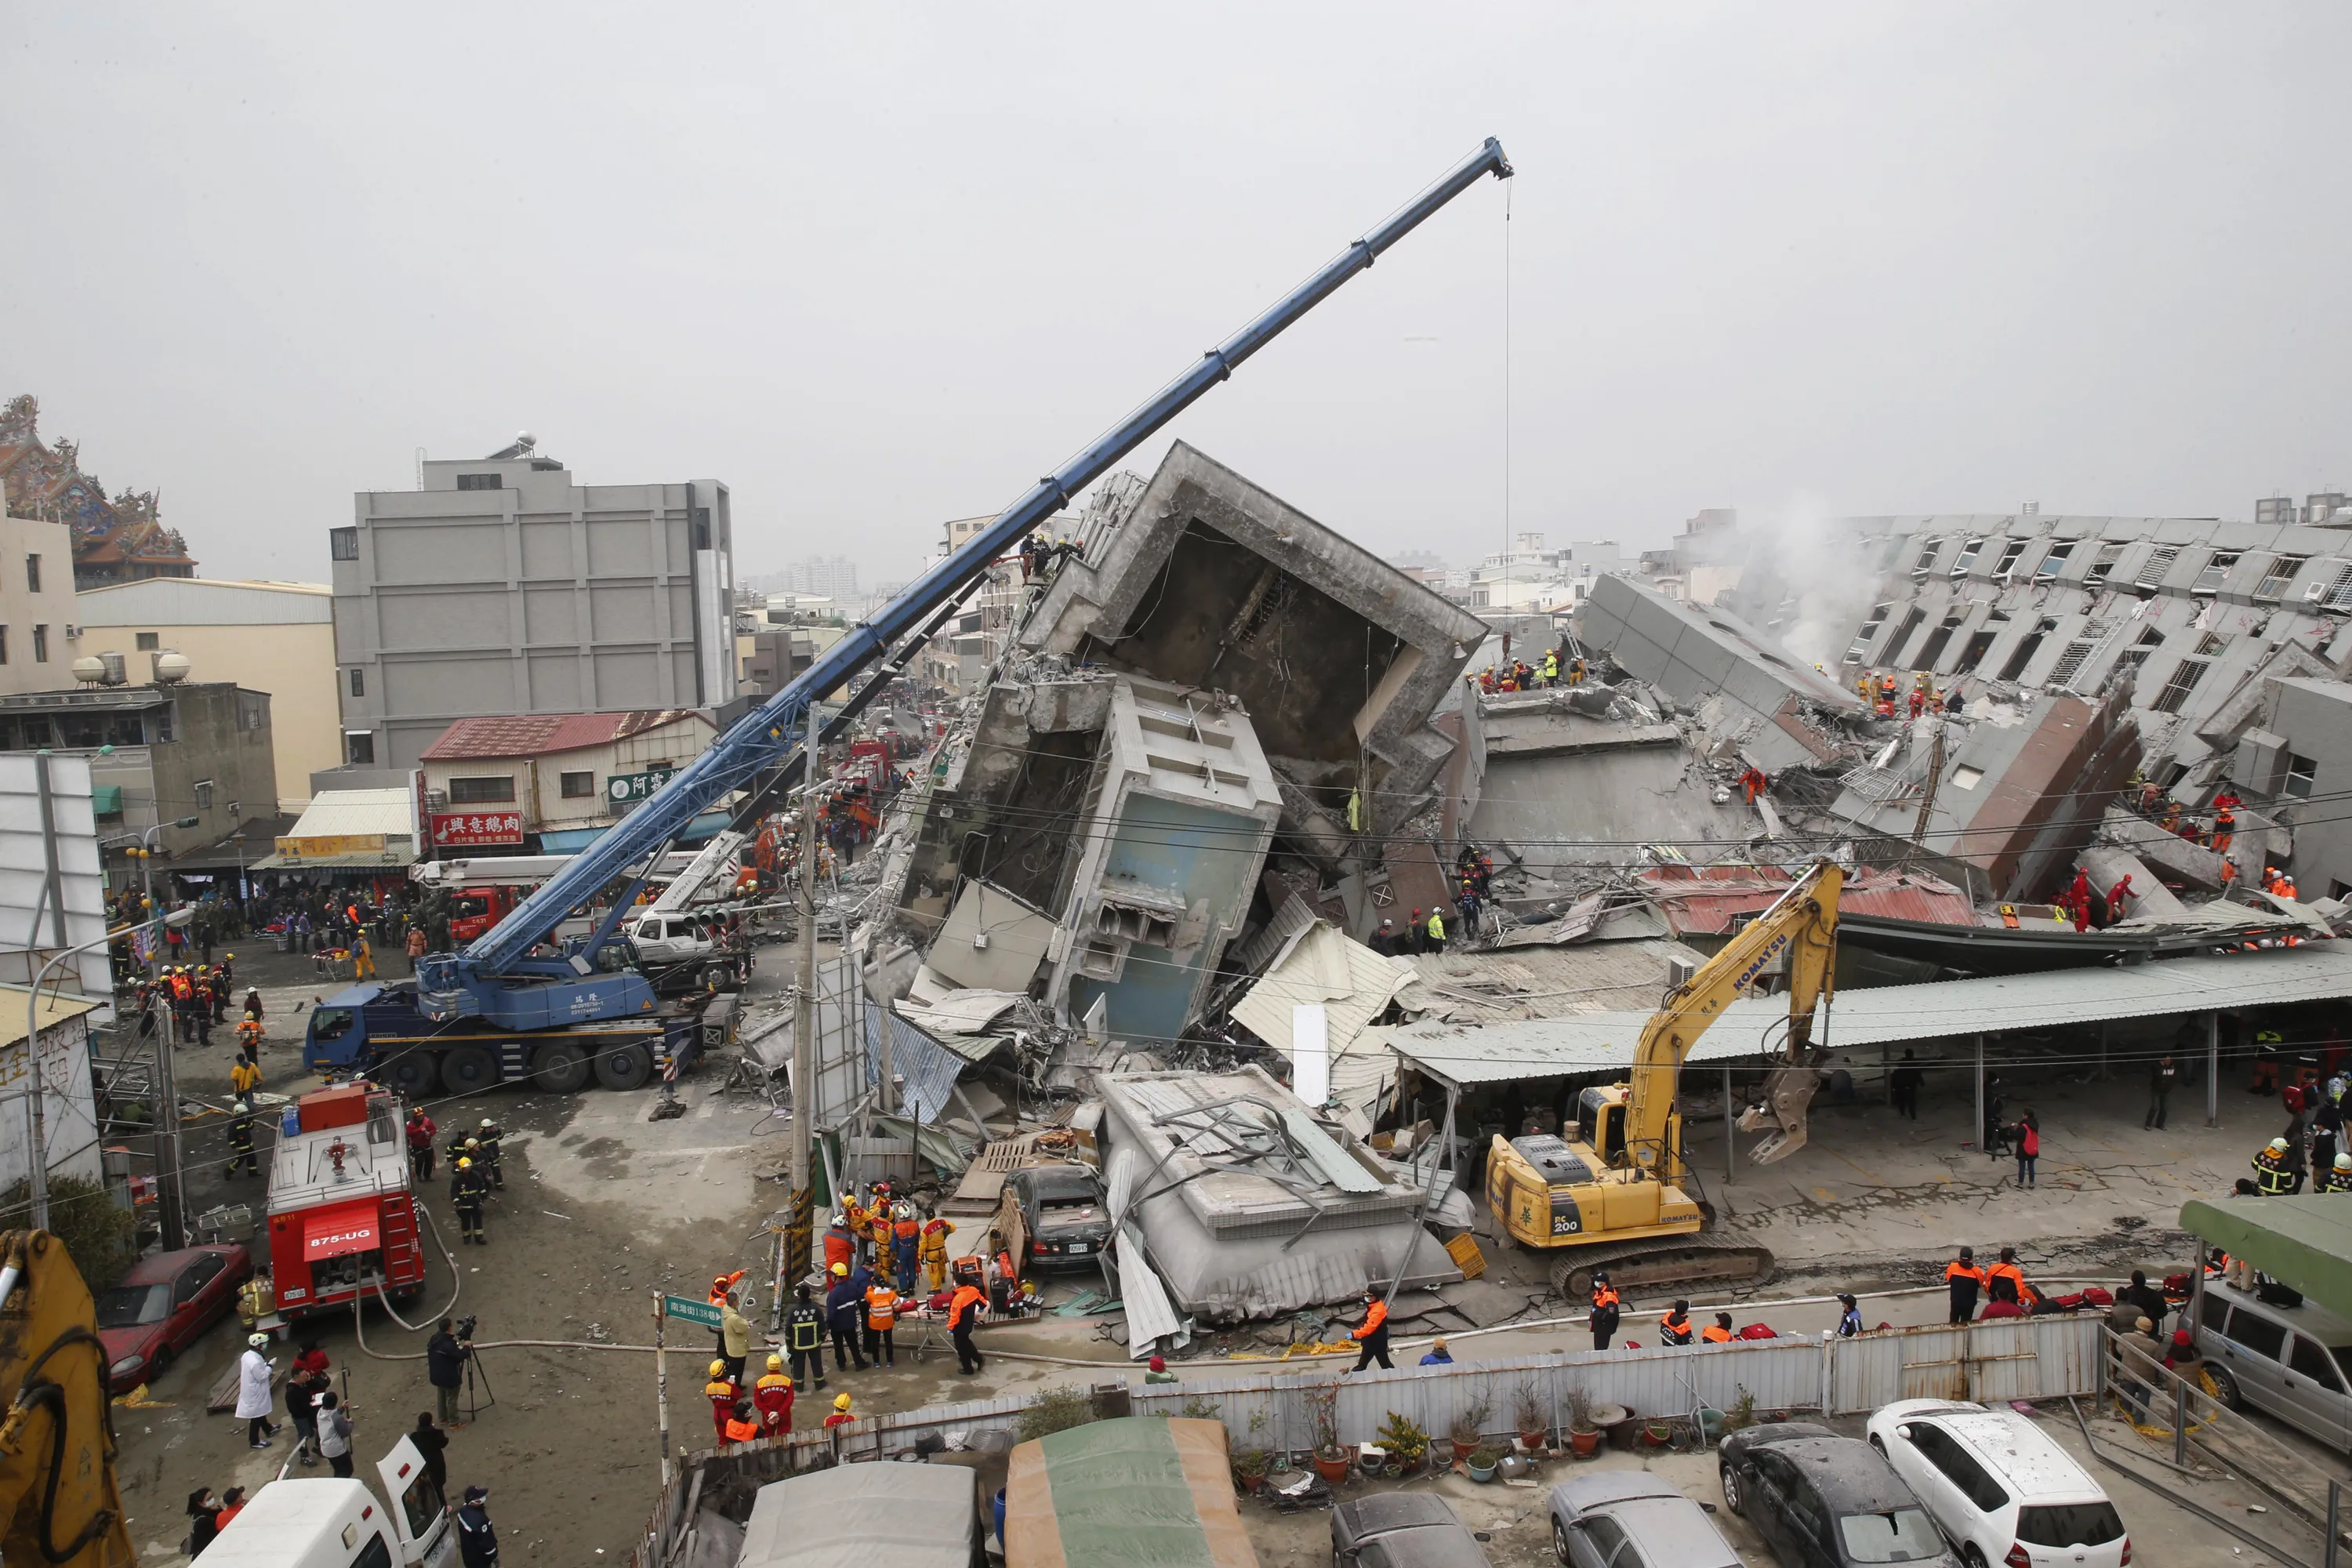 Землетрясение в тайване сейчас. Землетрясение на Тайване 1999. Разрушение домов при землетрясении. Тайбэй землетрясение. Землетрясение 9/21 на Тайване.